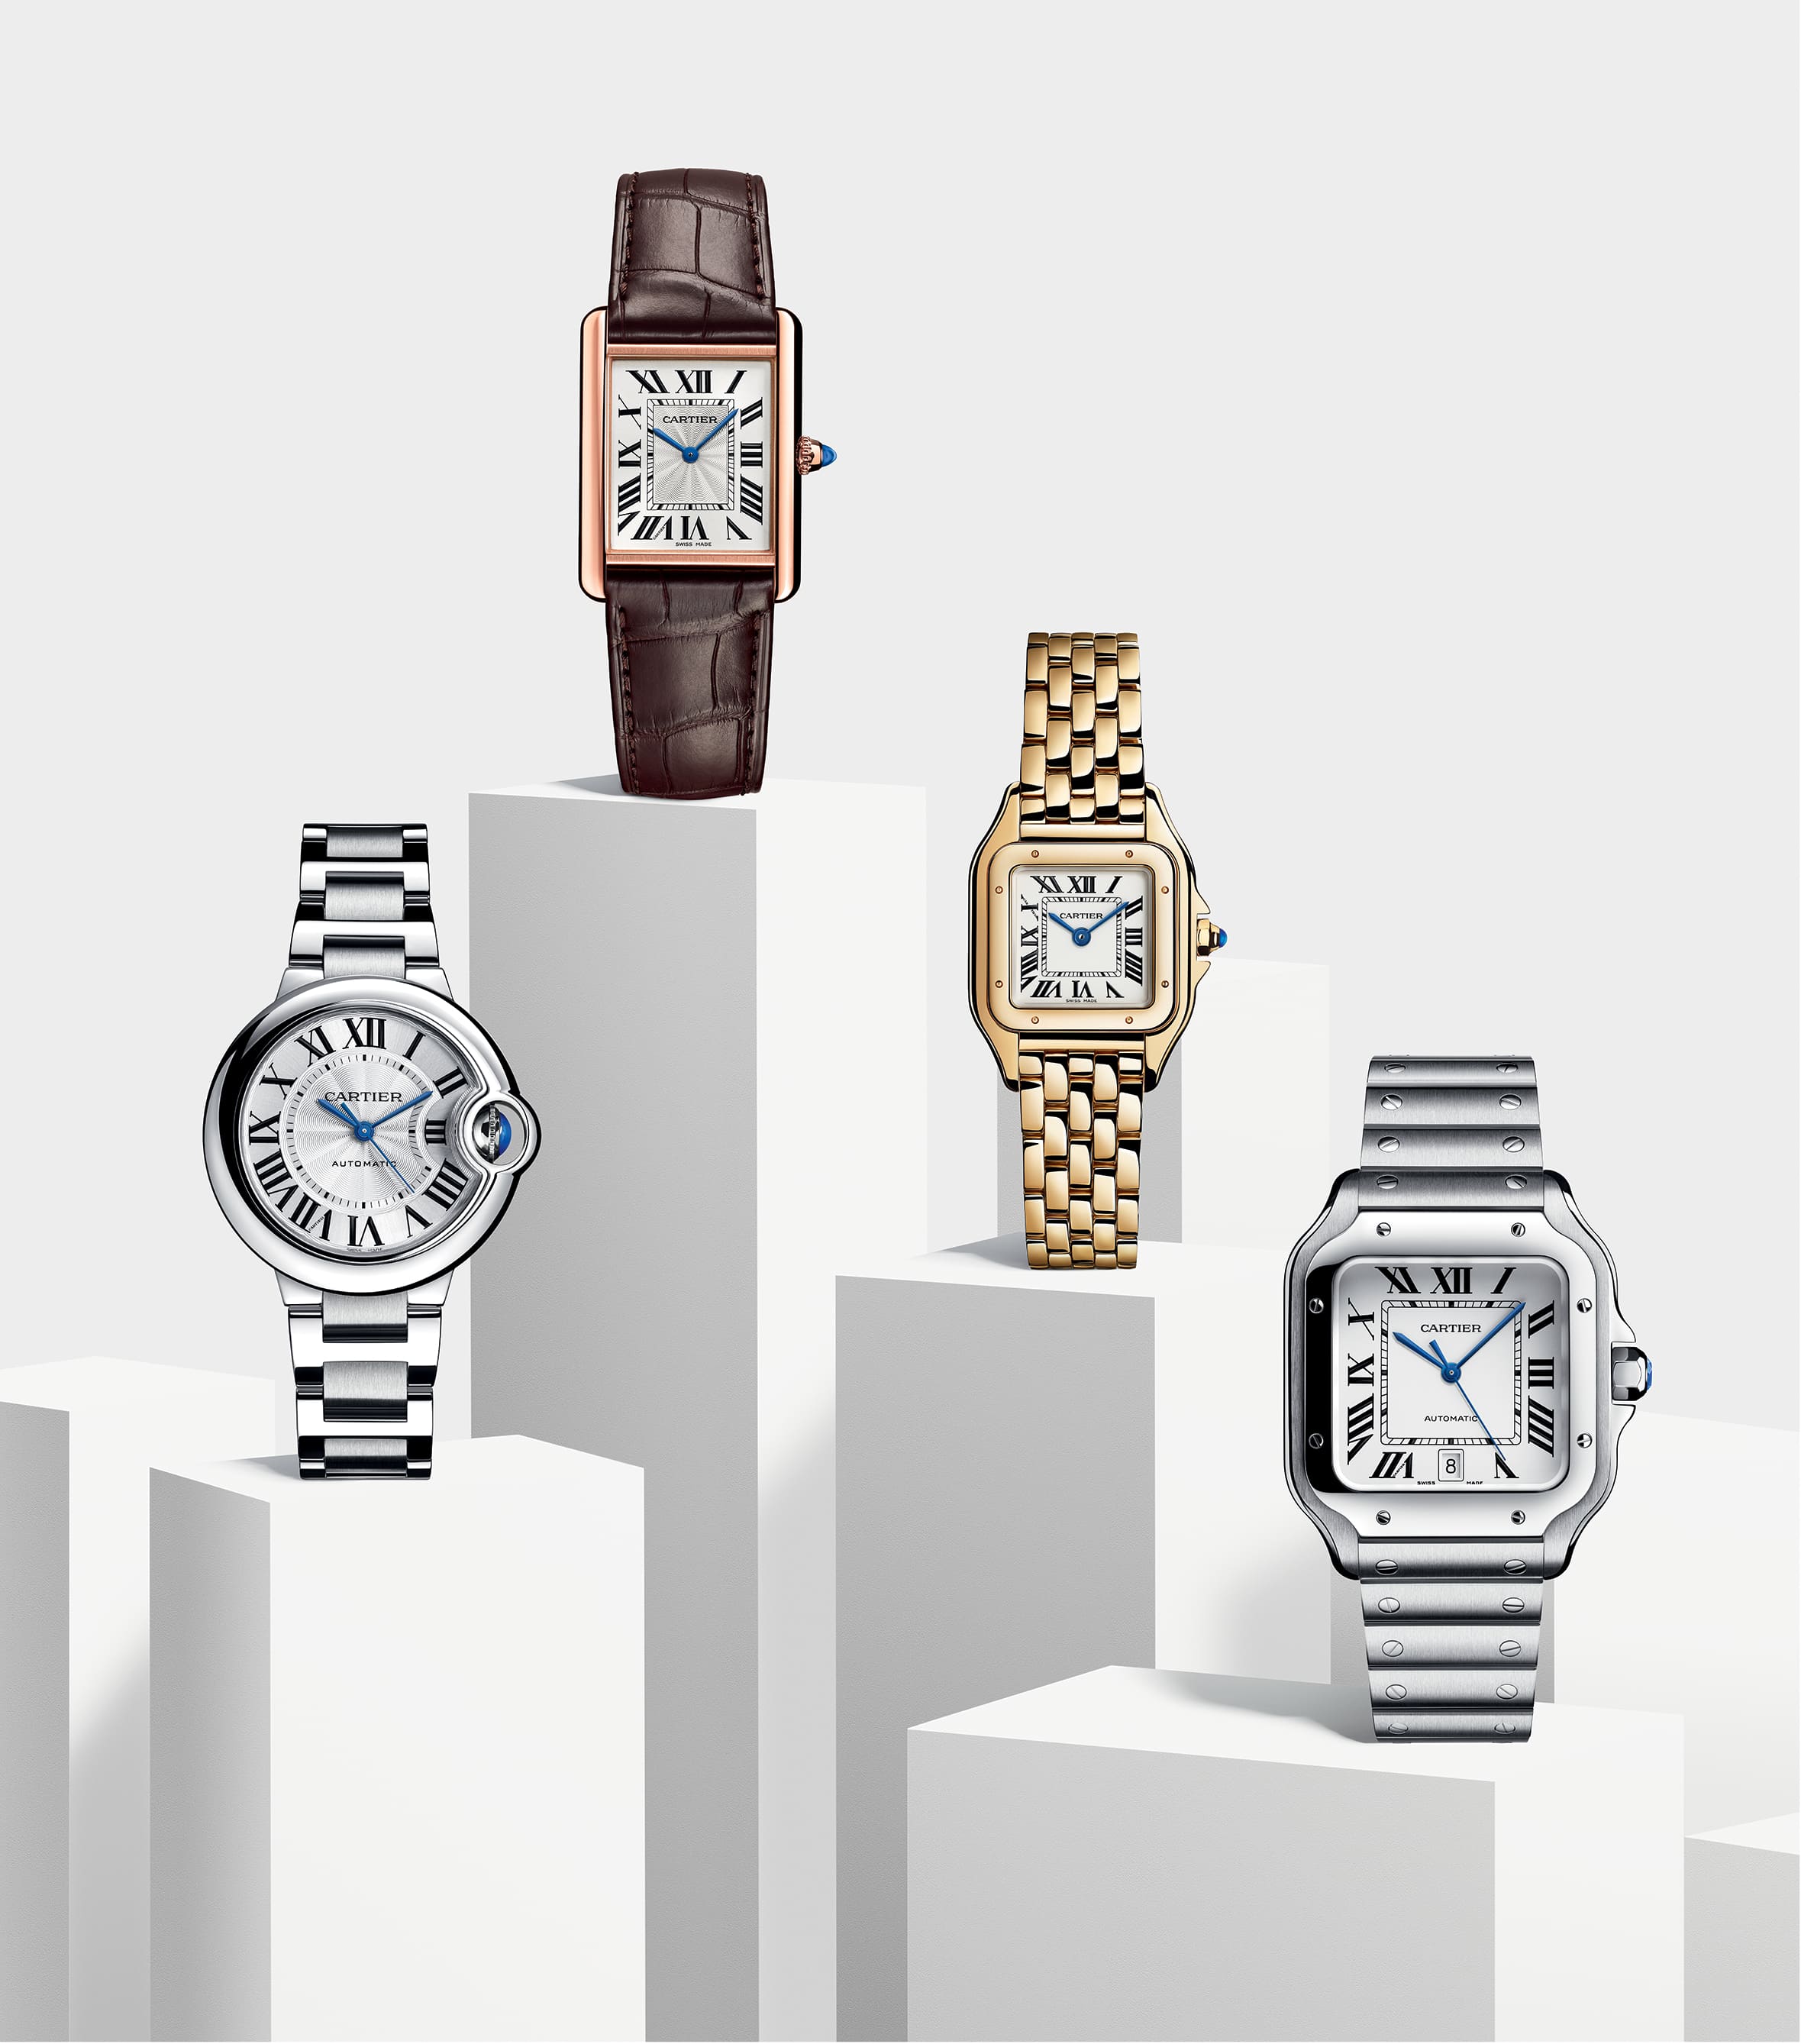 Cartier's ikonische Uhren